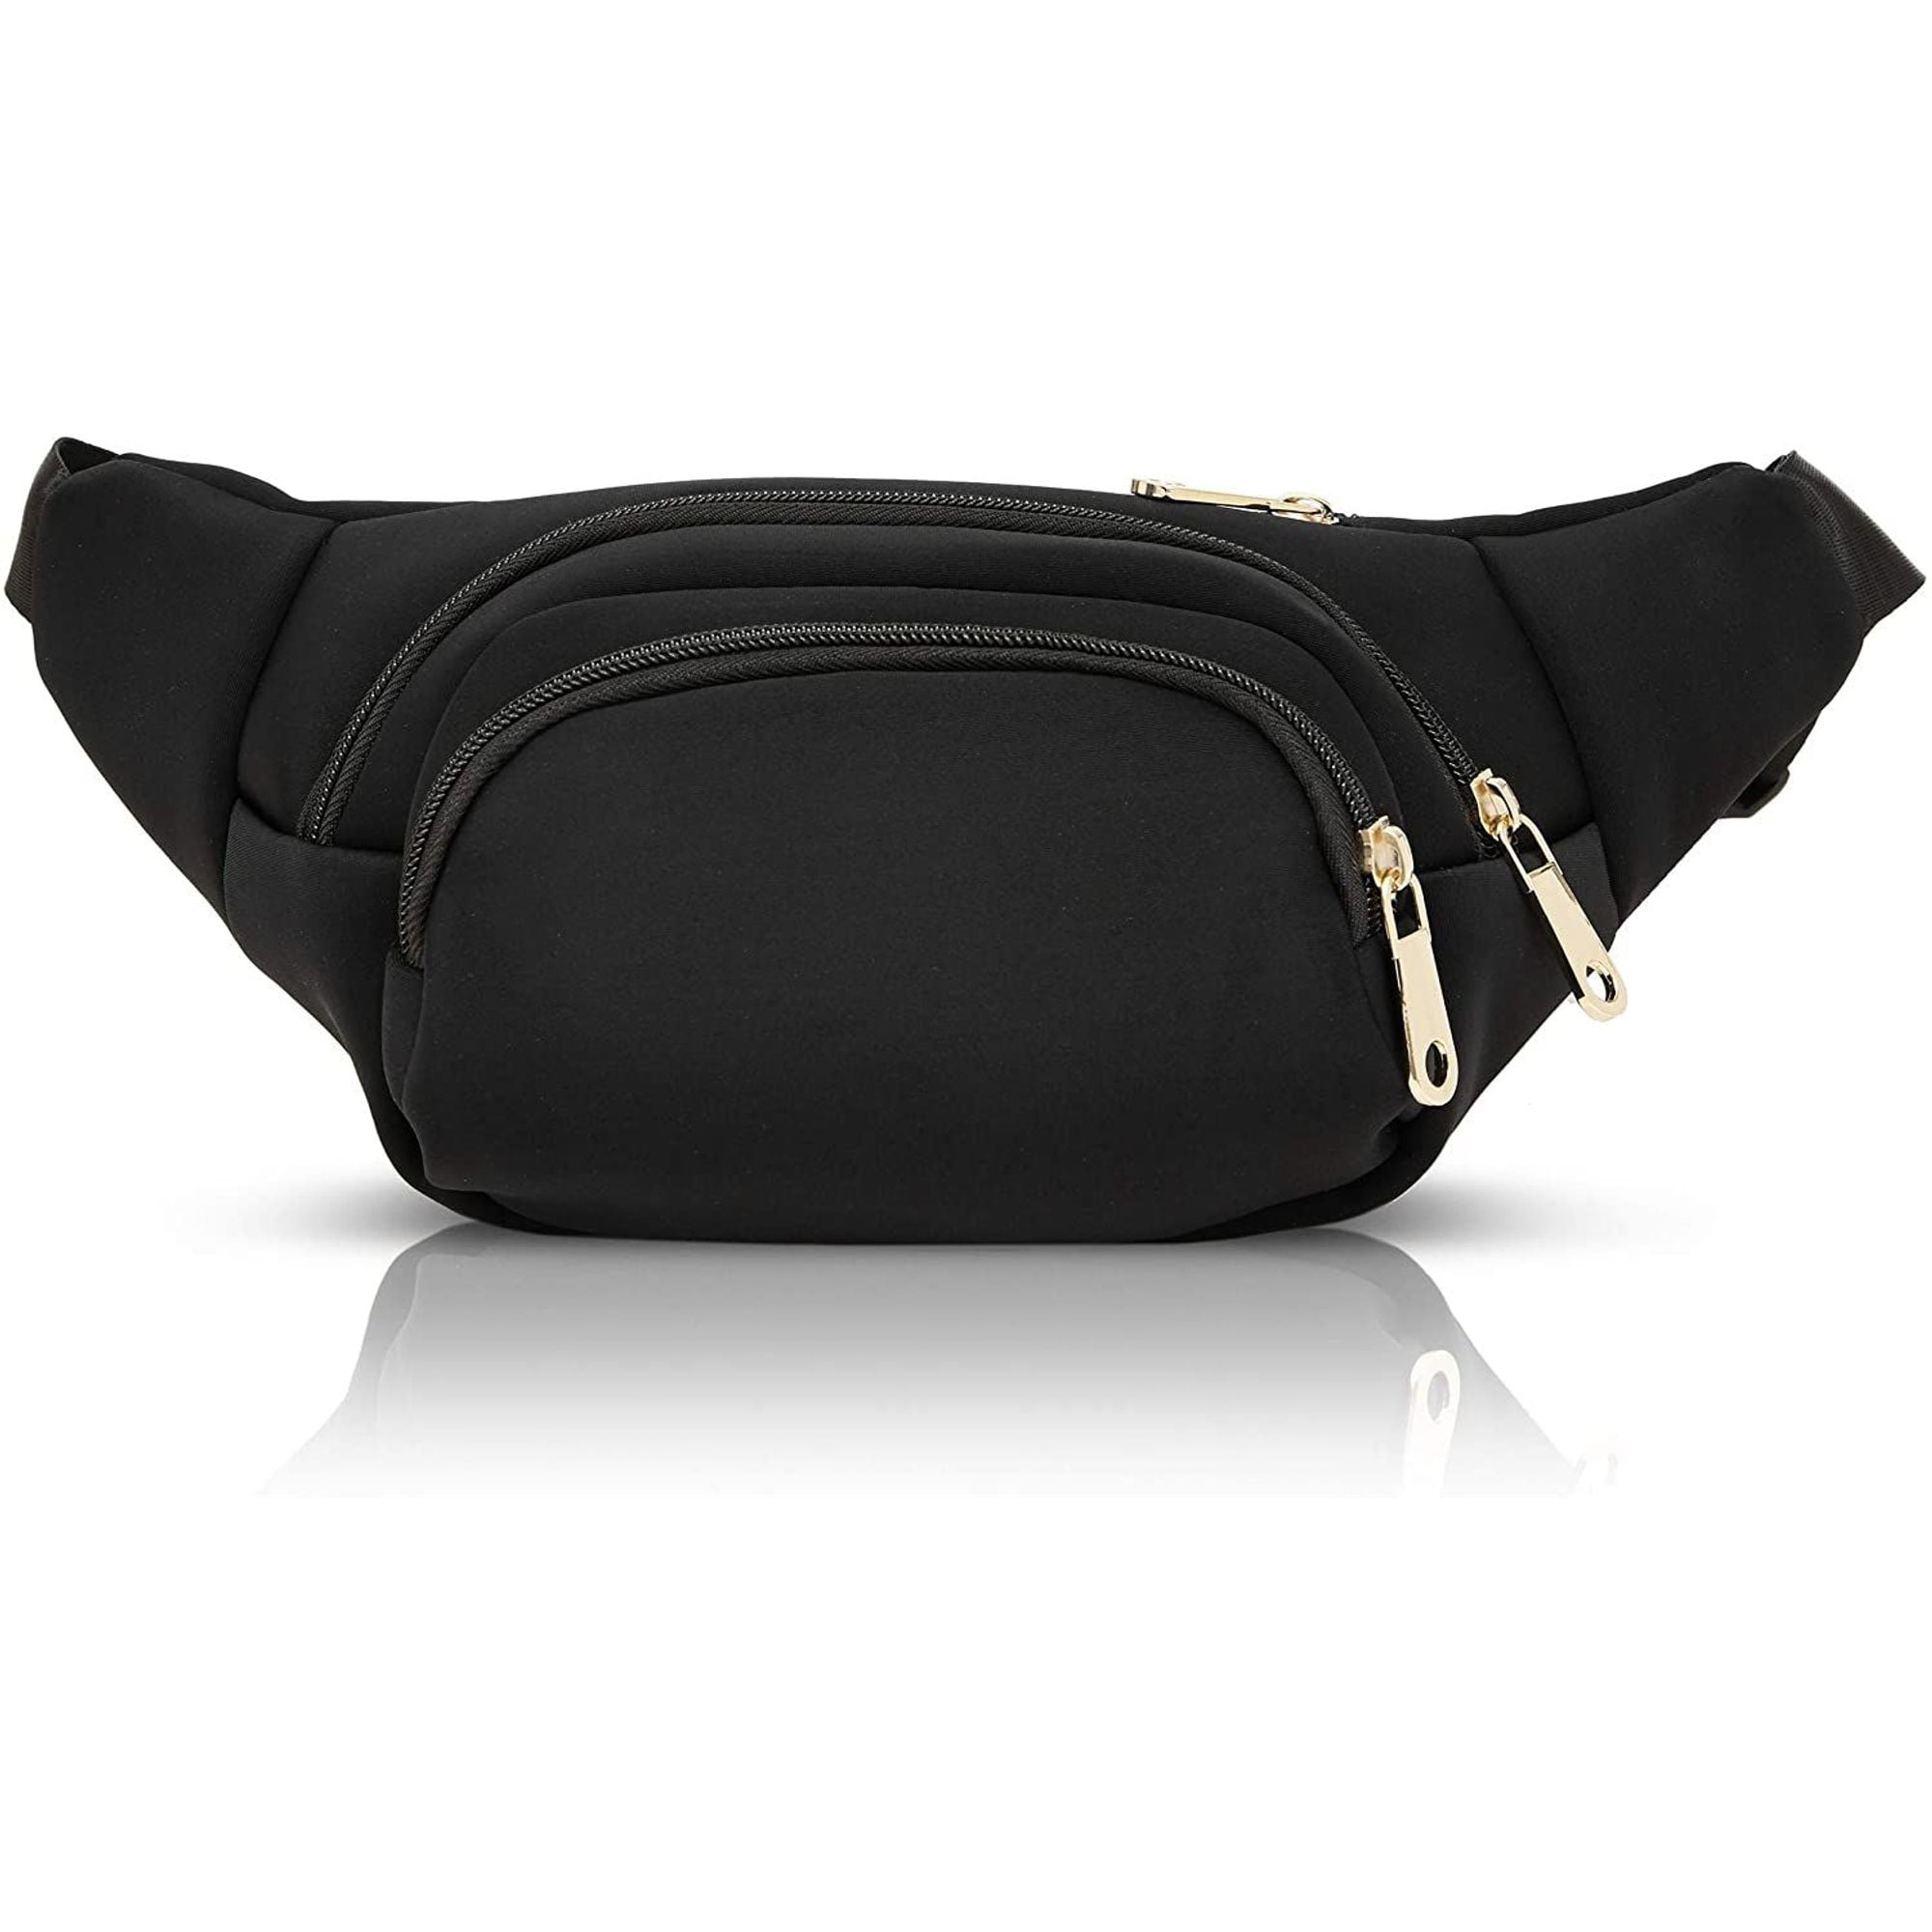 Belt Bag Women Fashion Waist Pack Wallet Handbag Small Purse Phone Pouch Travel 